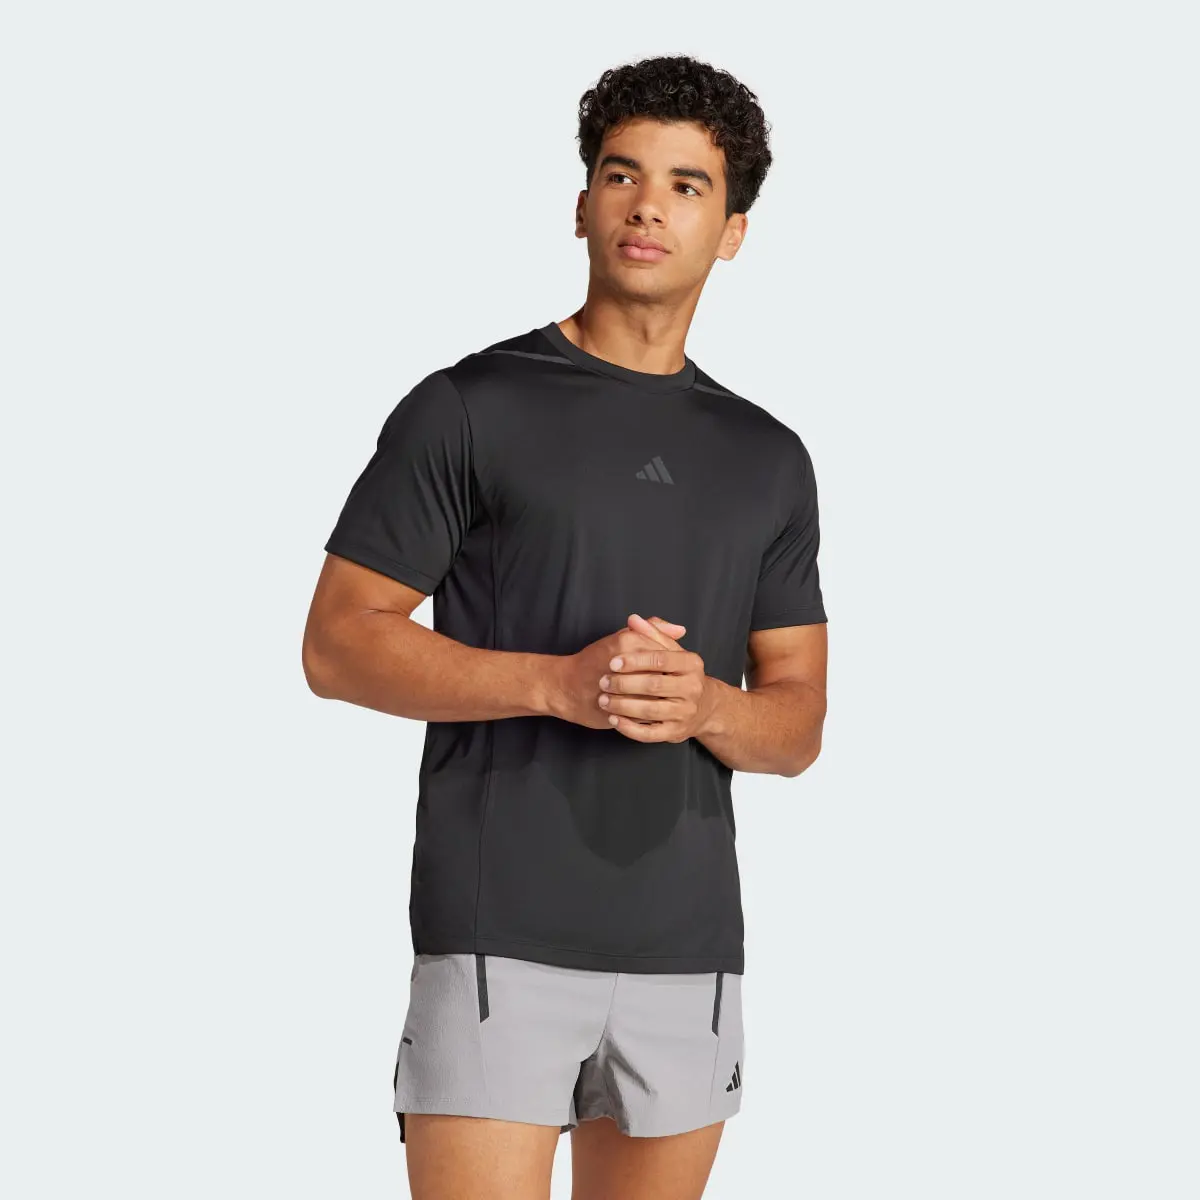 Adidas Camiseta Designed for Training Adistrong Workout. 2